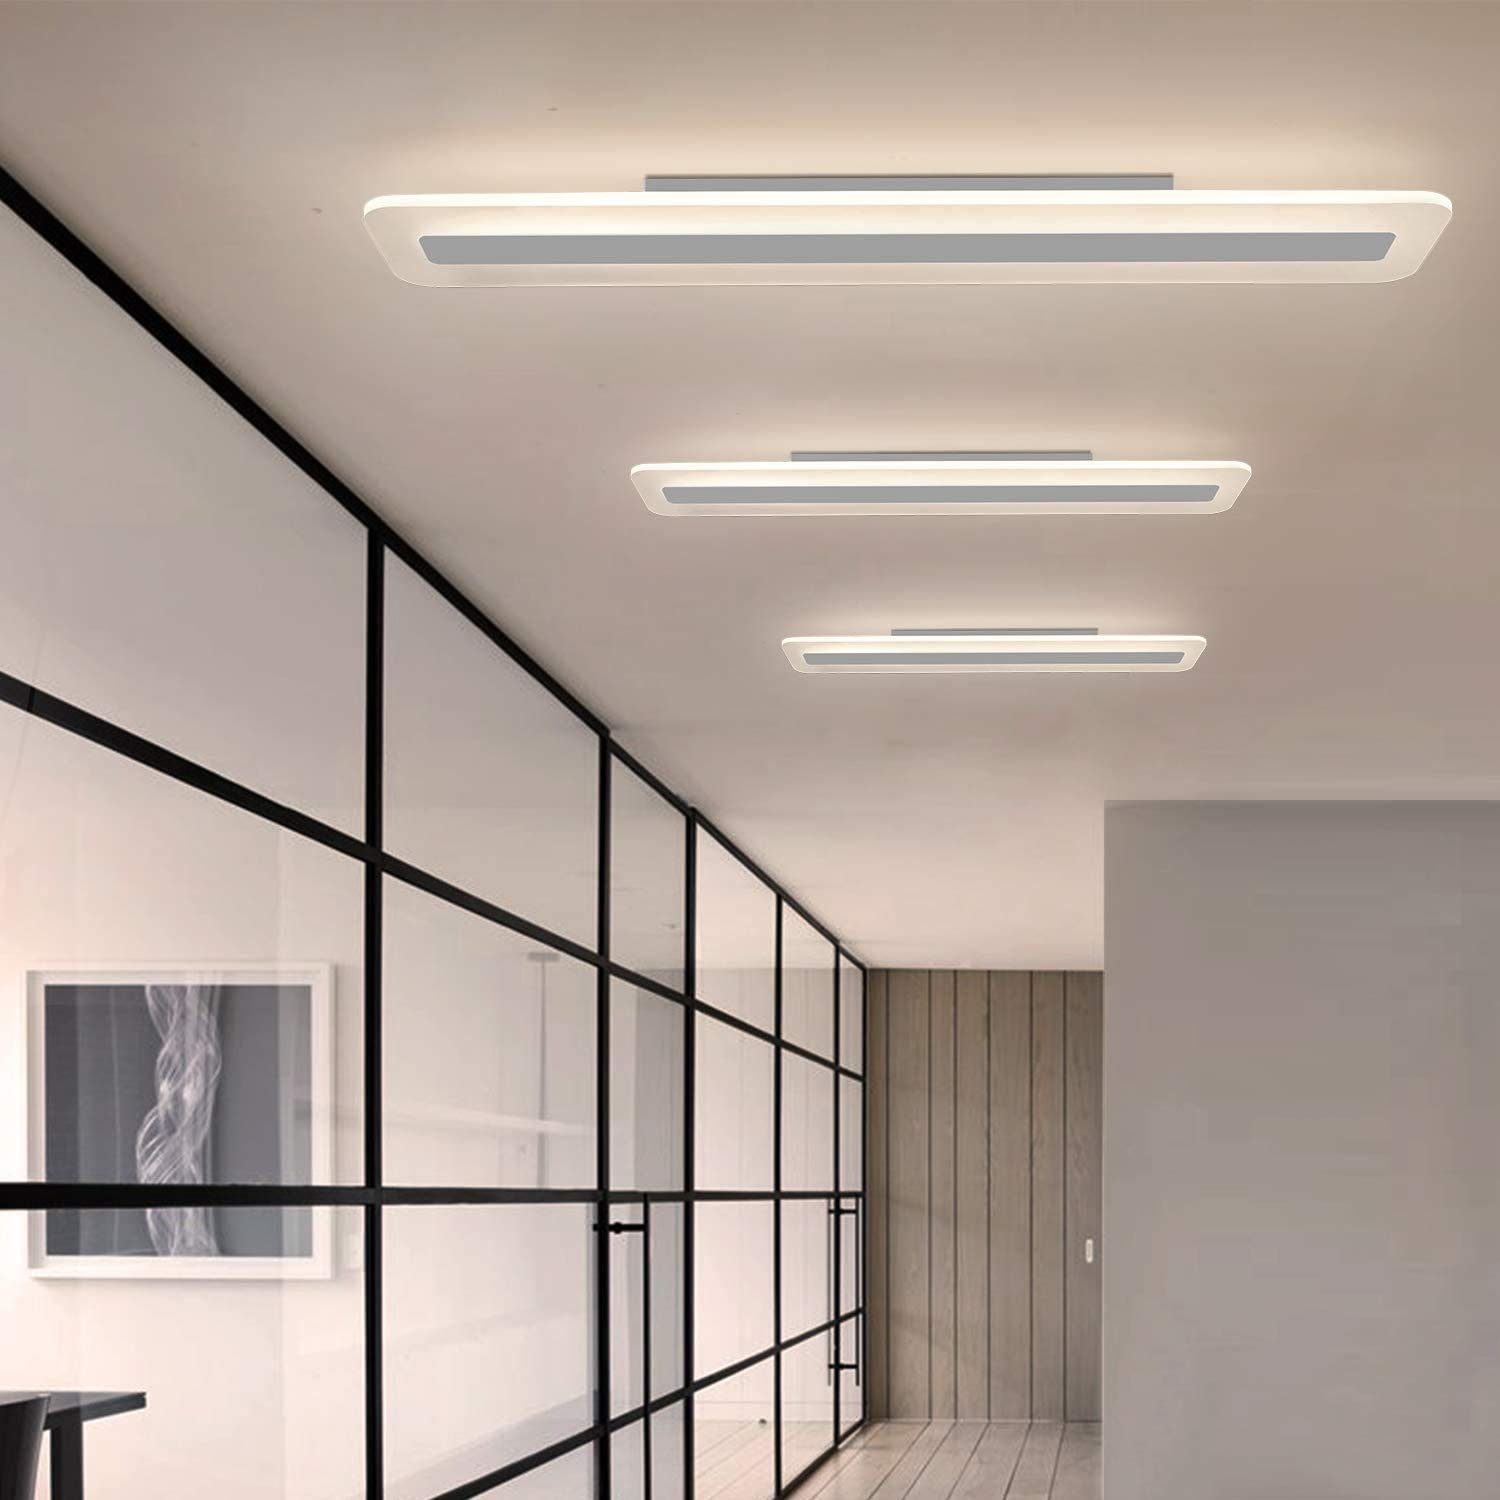 Bürolampe Tageslichtweiß LED weiß Flach Küche Deckenleuchte Fernbedienung integriert, ZMH fest modern Schlaf- LED Balkon, Panel